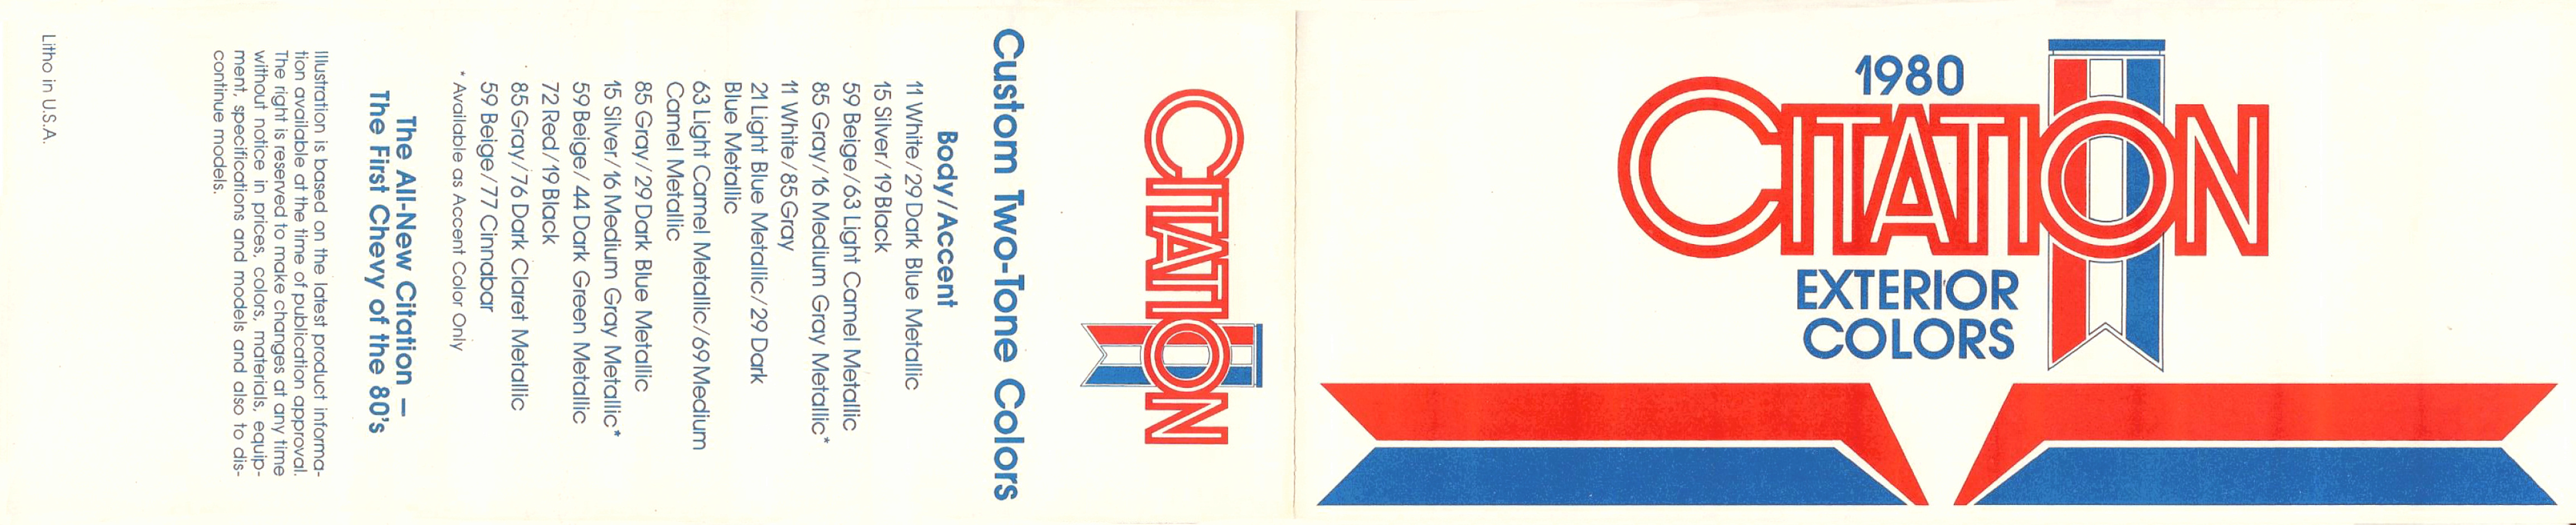 1980_Chevrolet_Citation_Color_Chart-Side_A